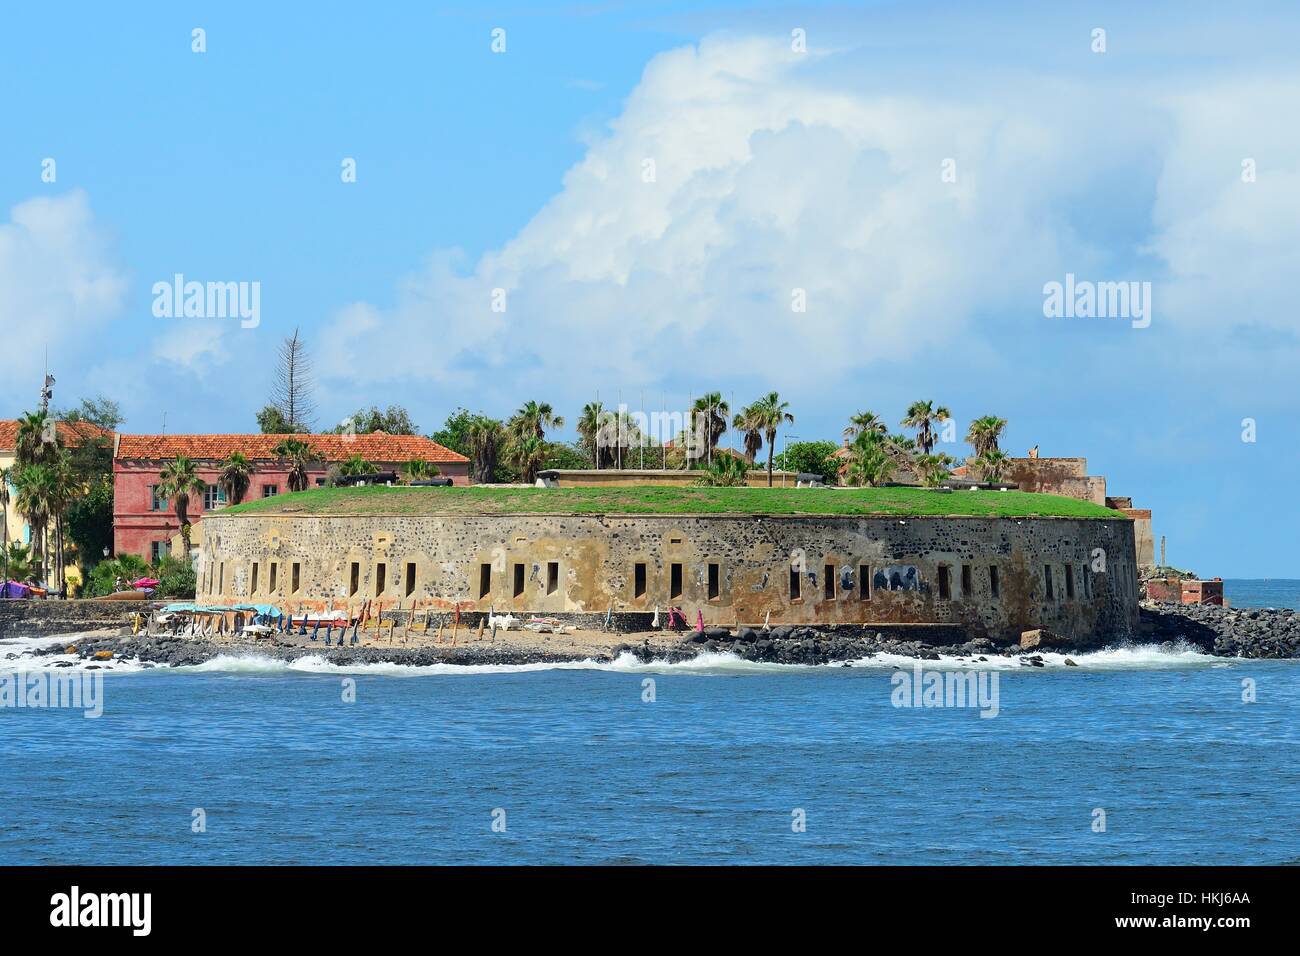 Fort d'Estrées, slave island, Île de Gorée, Dakar, Senegal Foto Stock